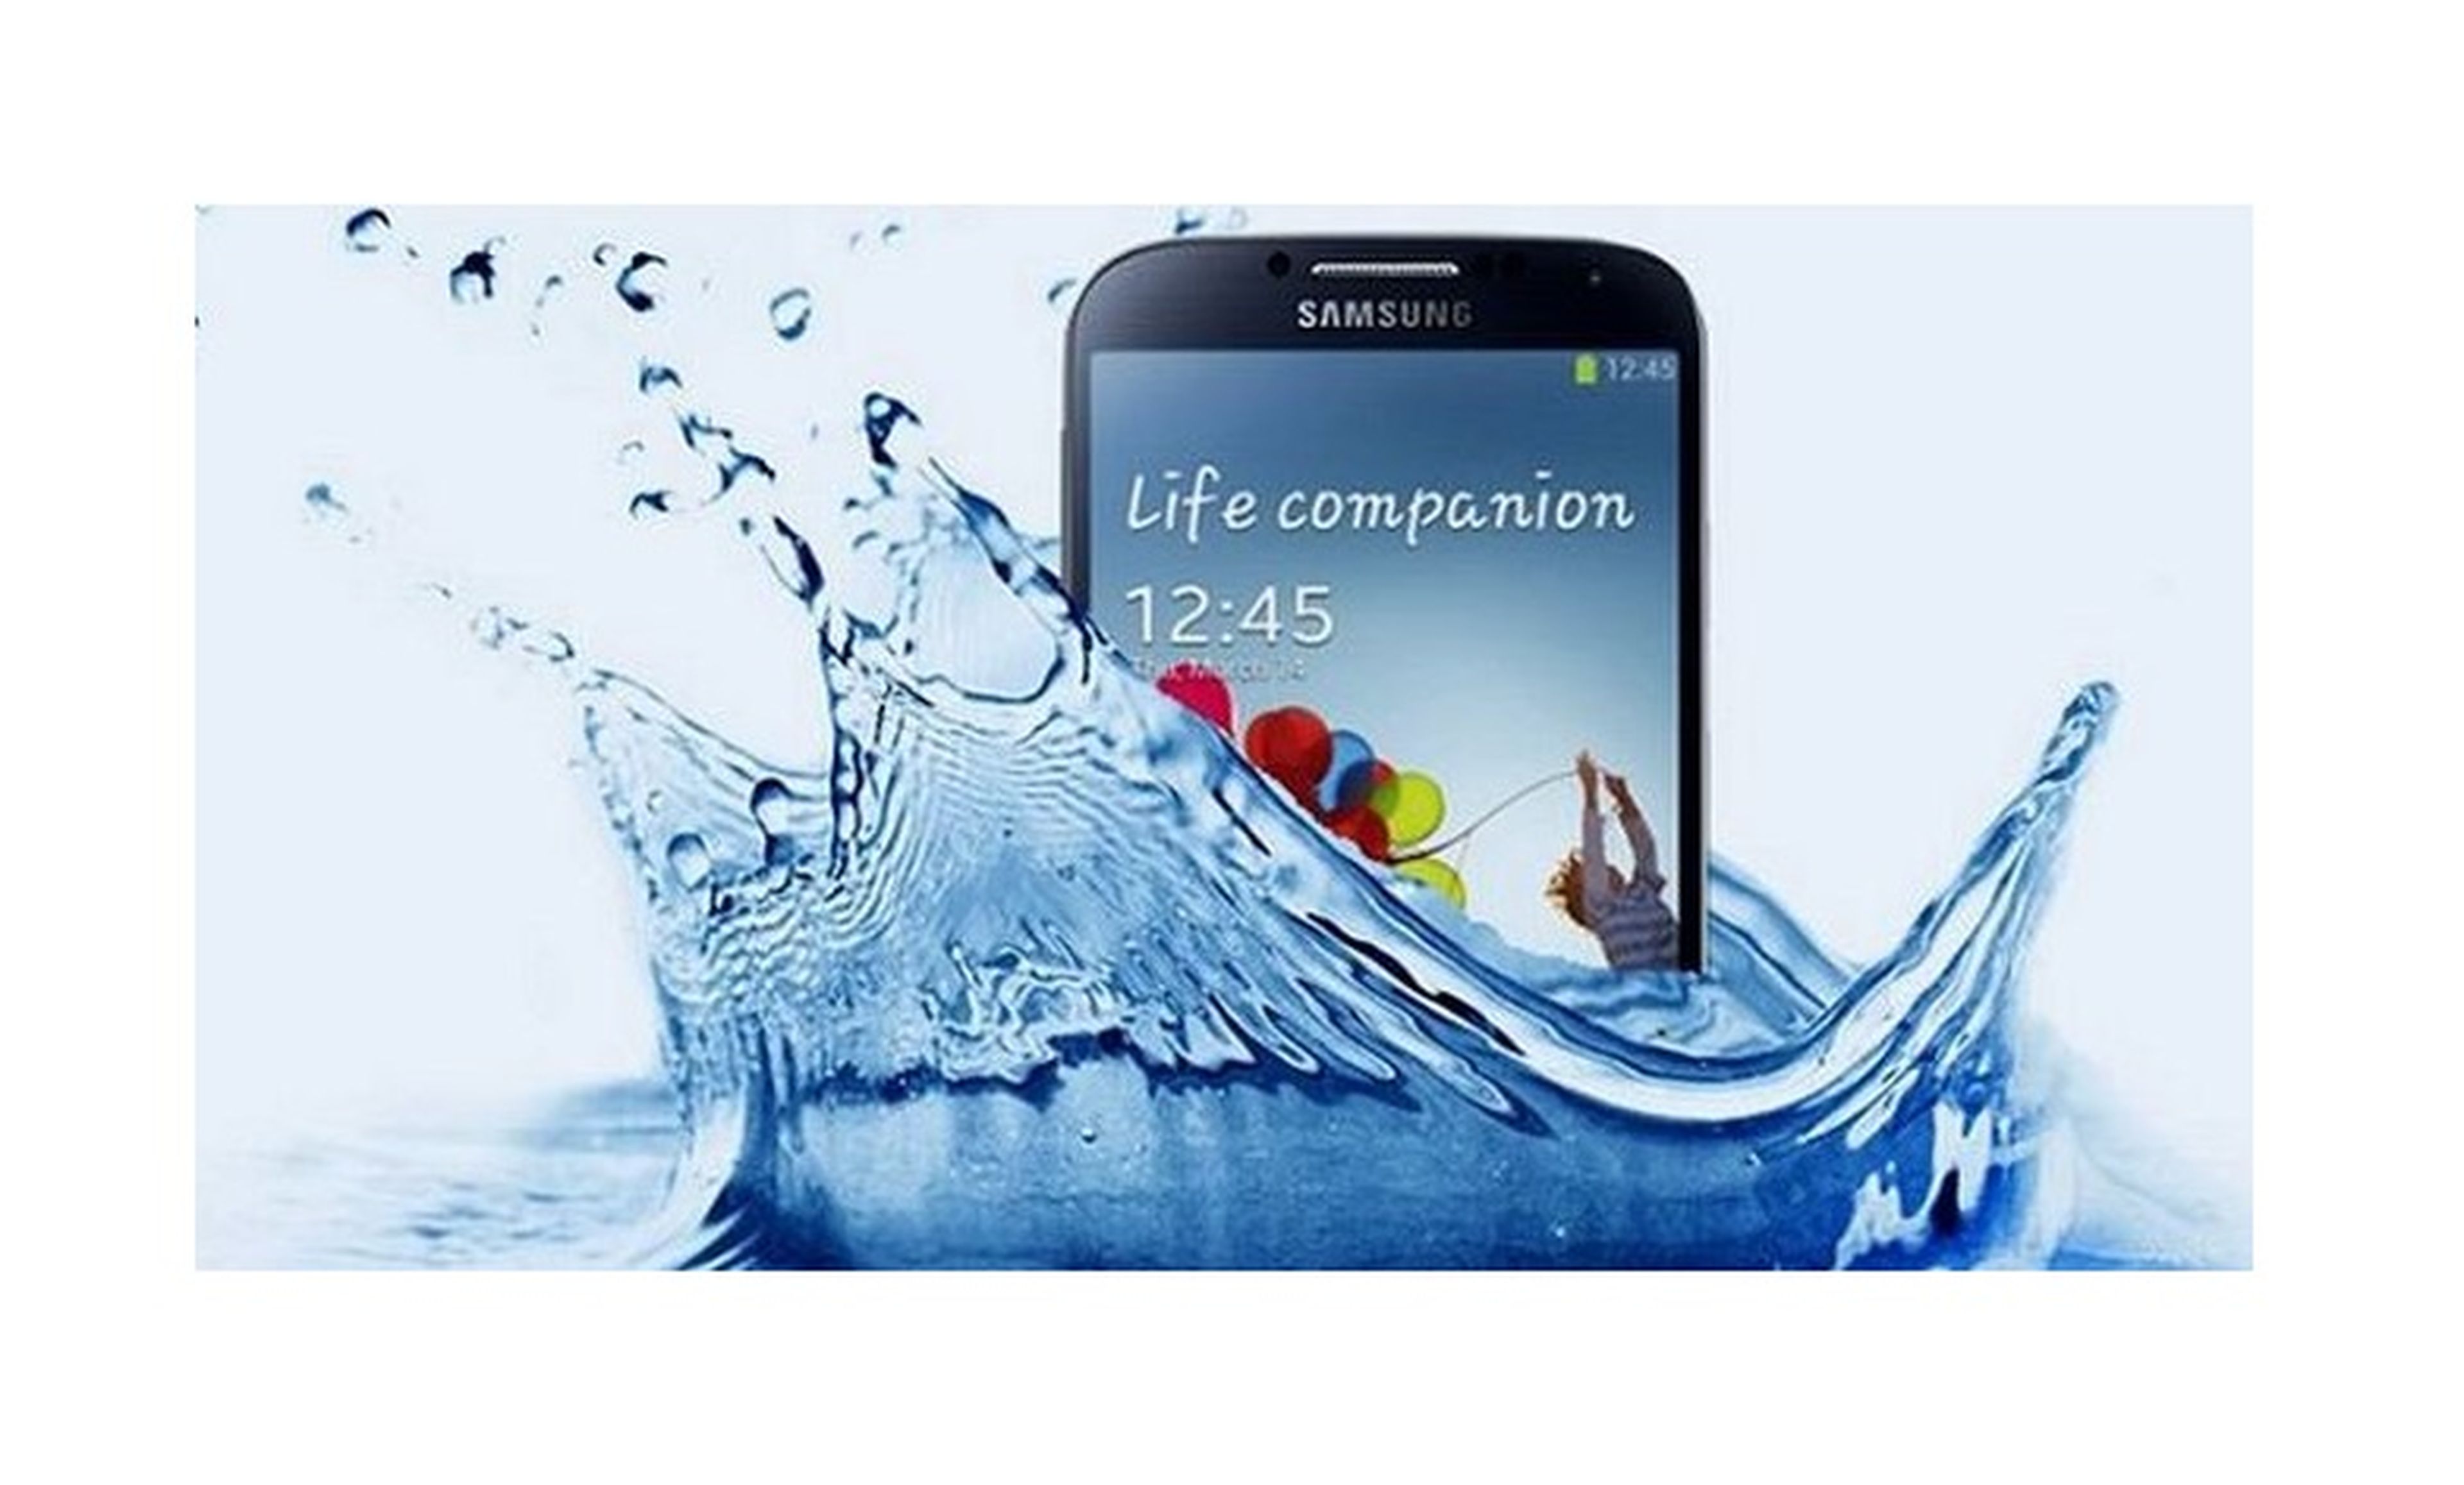 Samsung Galaxy S4 Active a la venta en Estados Unidos